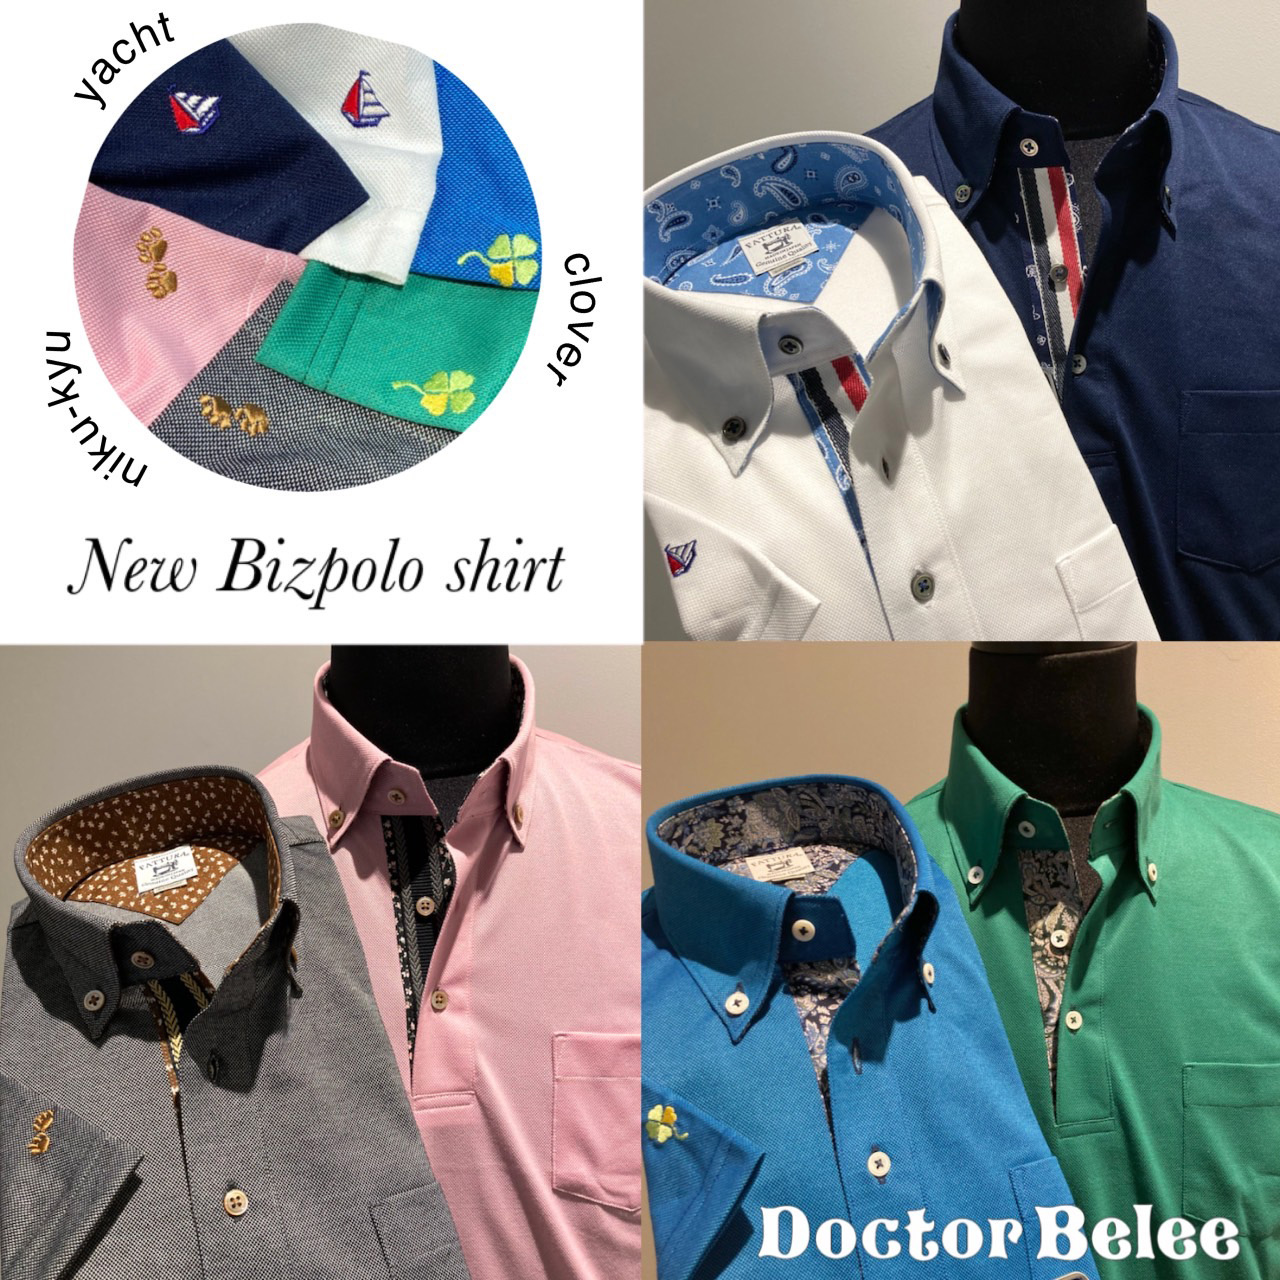 ドクターベリー こだわりの日本製シャツやネクタイで、オリジナル 